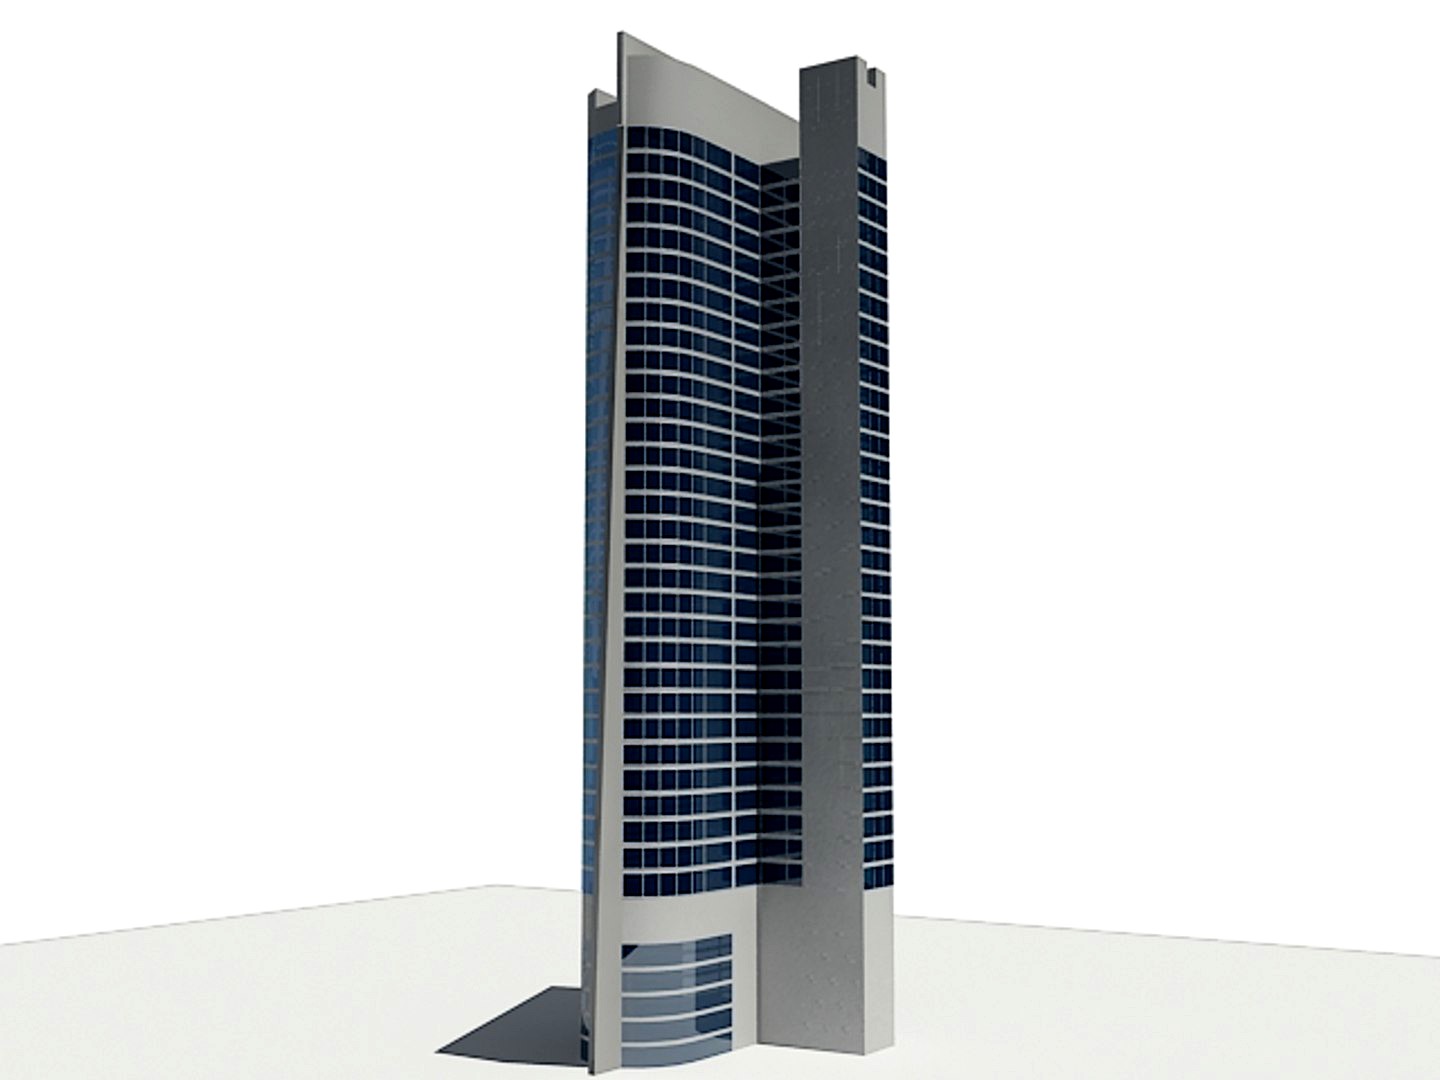 concept skyscraper